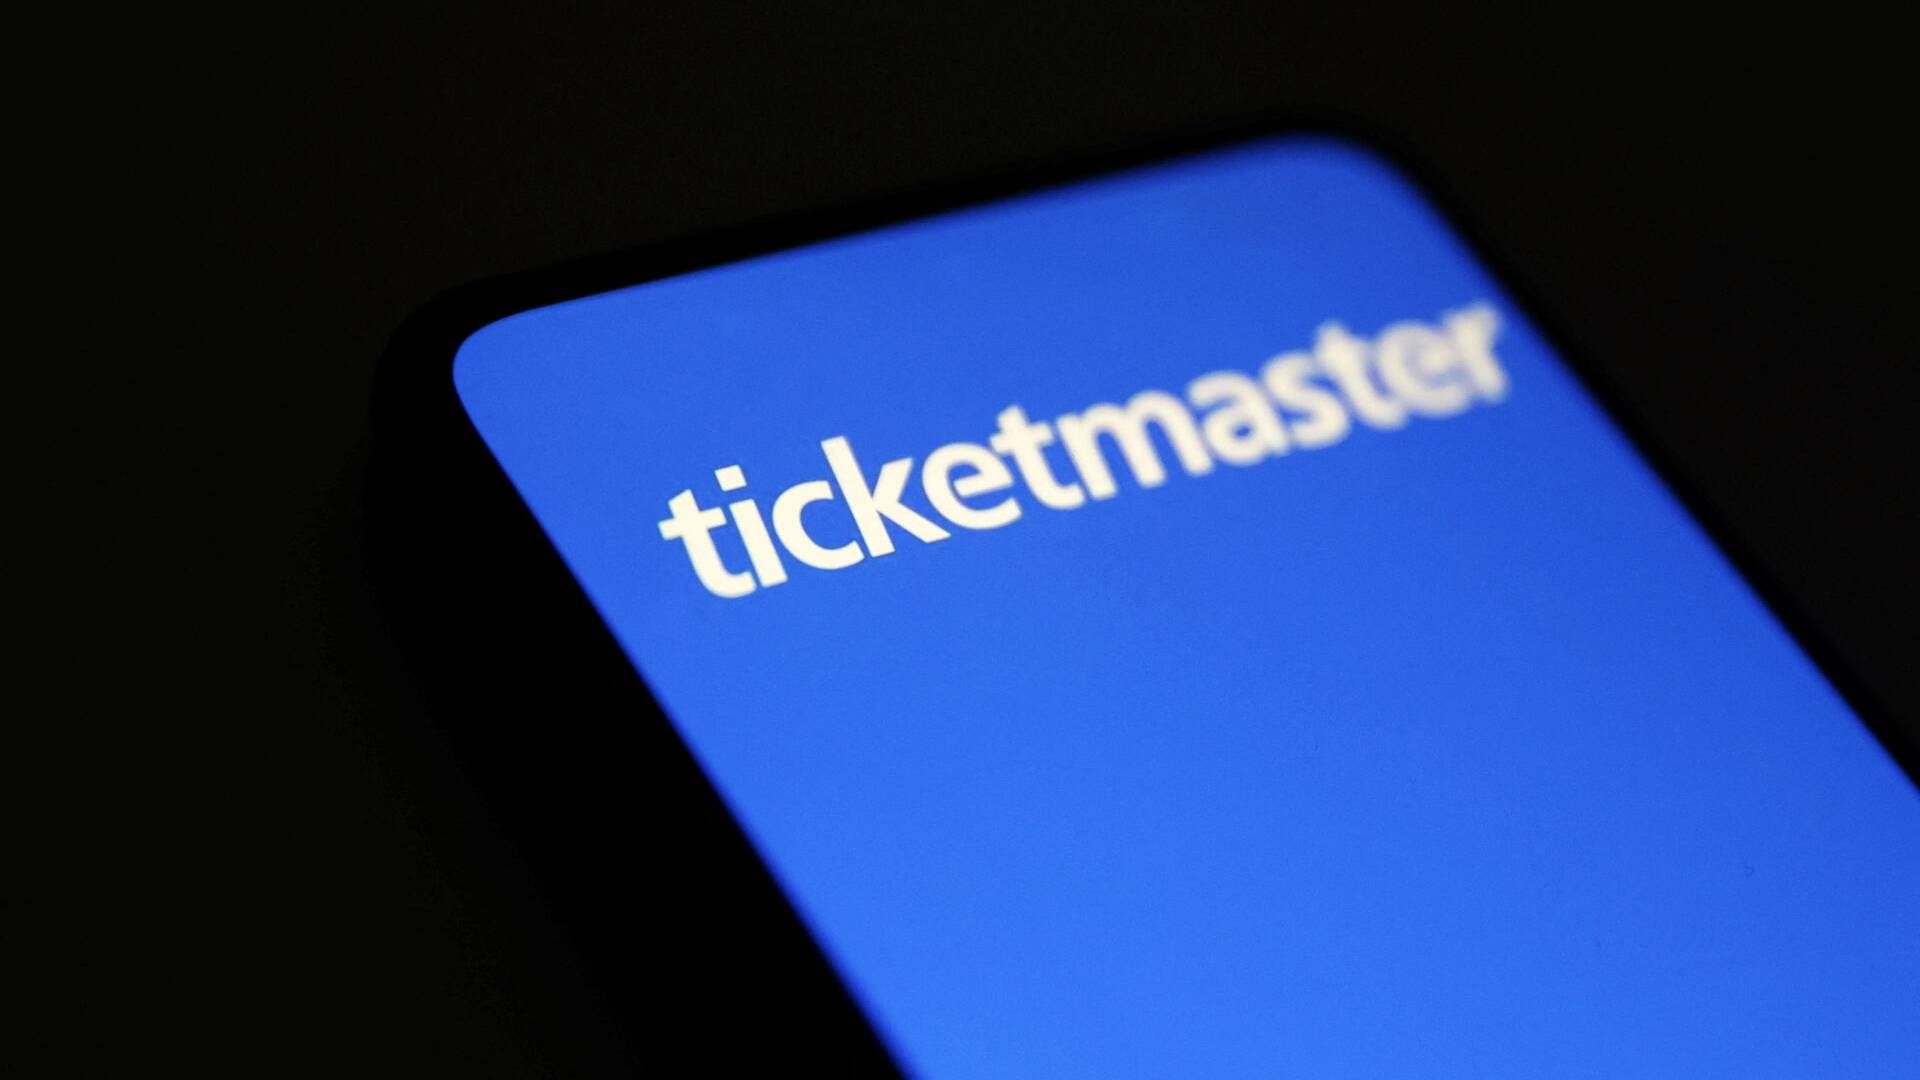 Det er for svært som bruger på Ticketmaster at slette sin profil, og det kan være i strid med loven. | Foto: Dado Ruvic/Reuters/Ritzau Scanpix